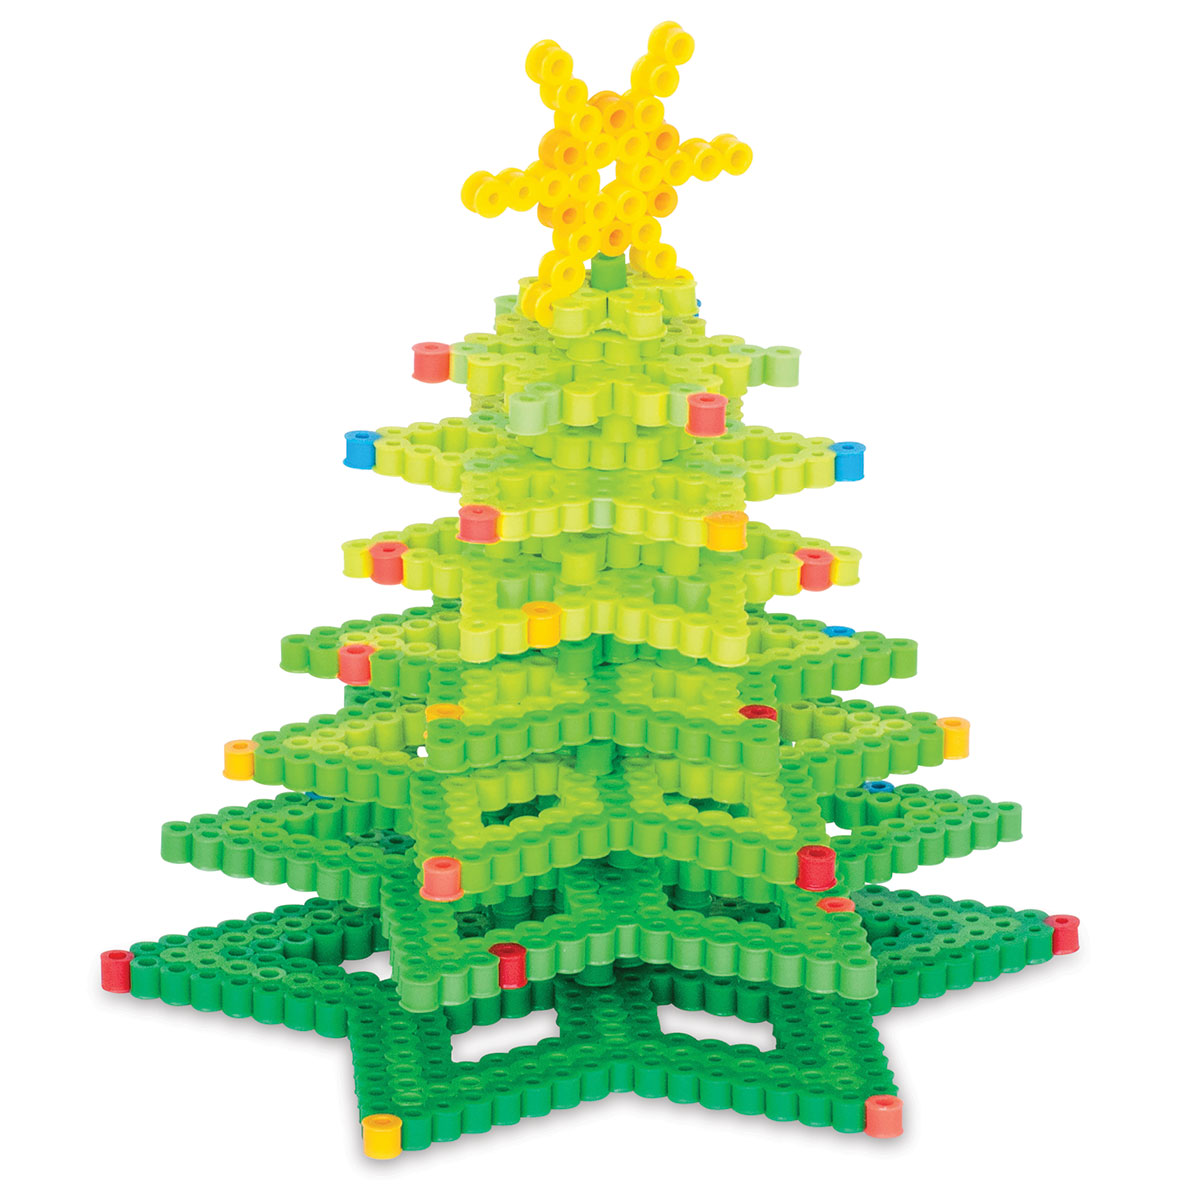 Perler 3D Christmas Tree Fused Bead Kit